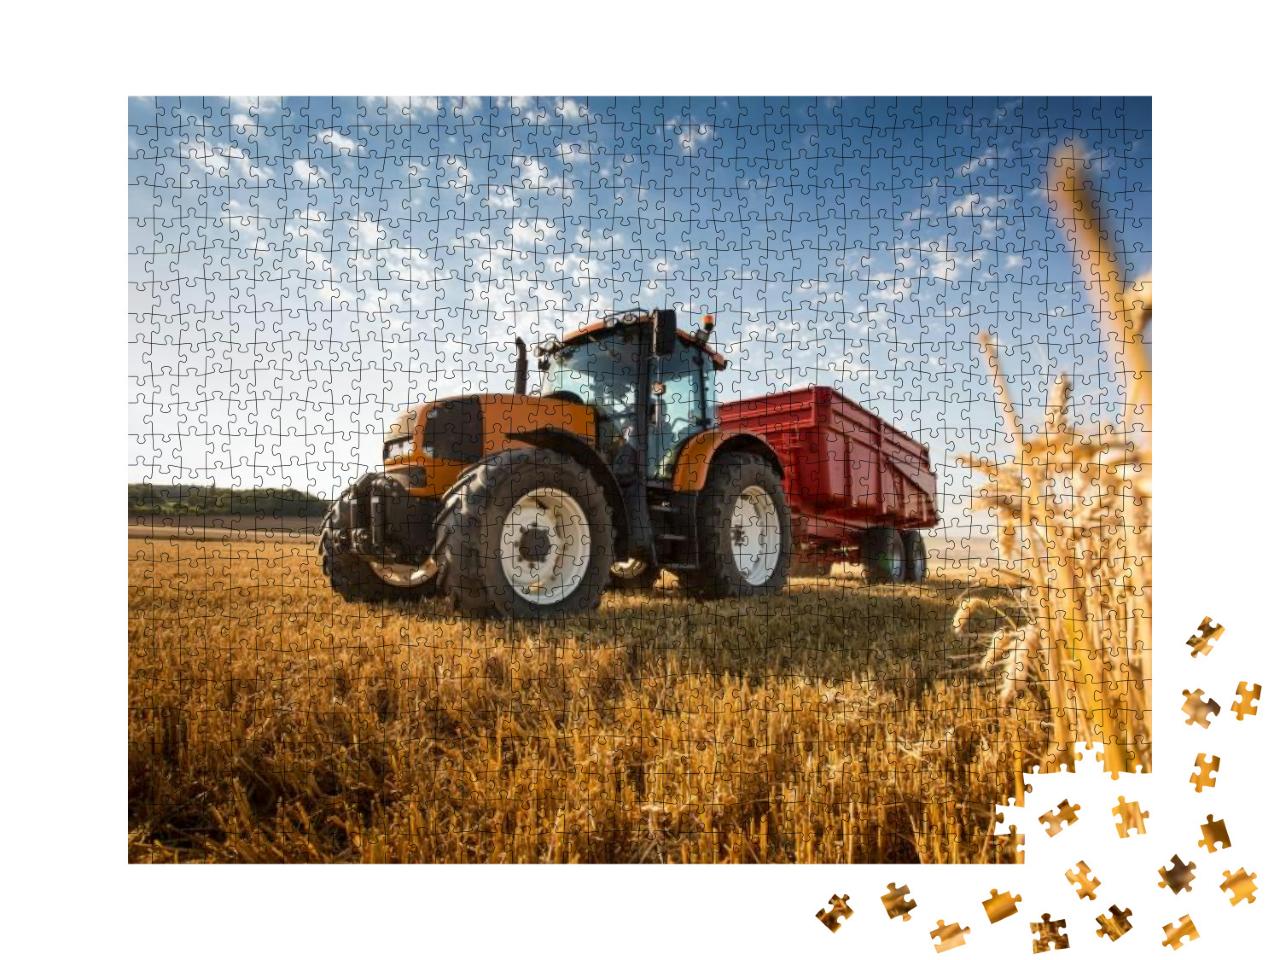 Puzzle 1000 Teile „Ein Traktor bei der Ernte“